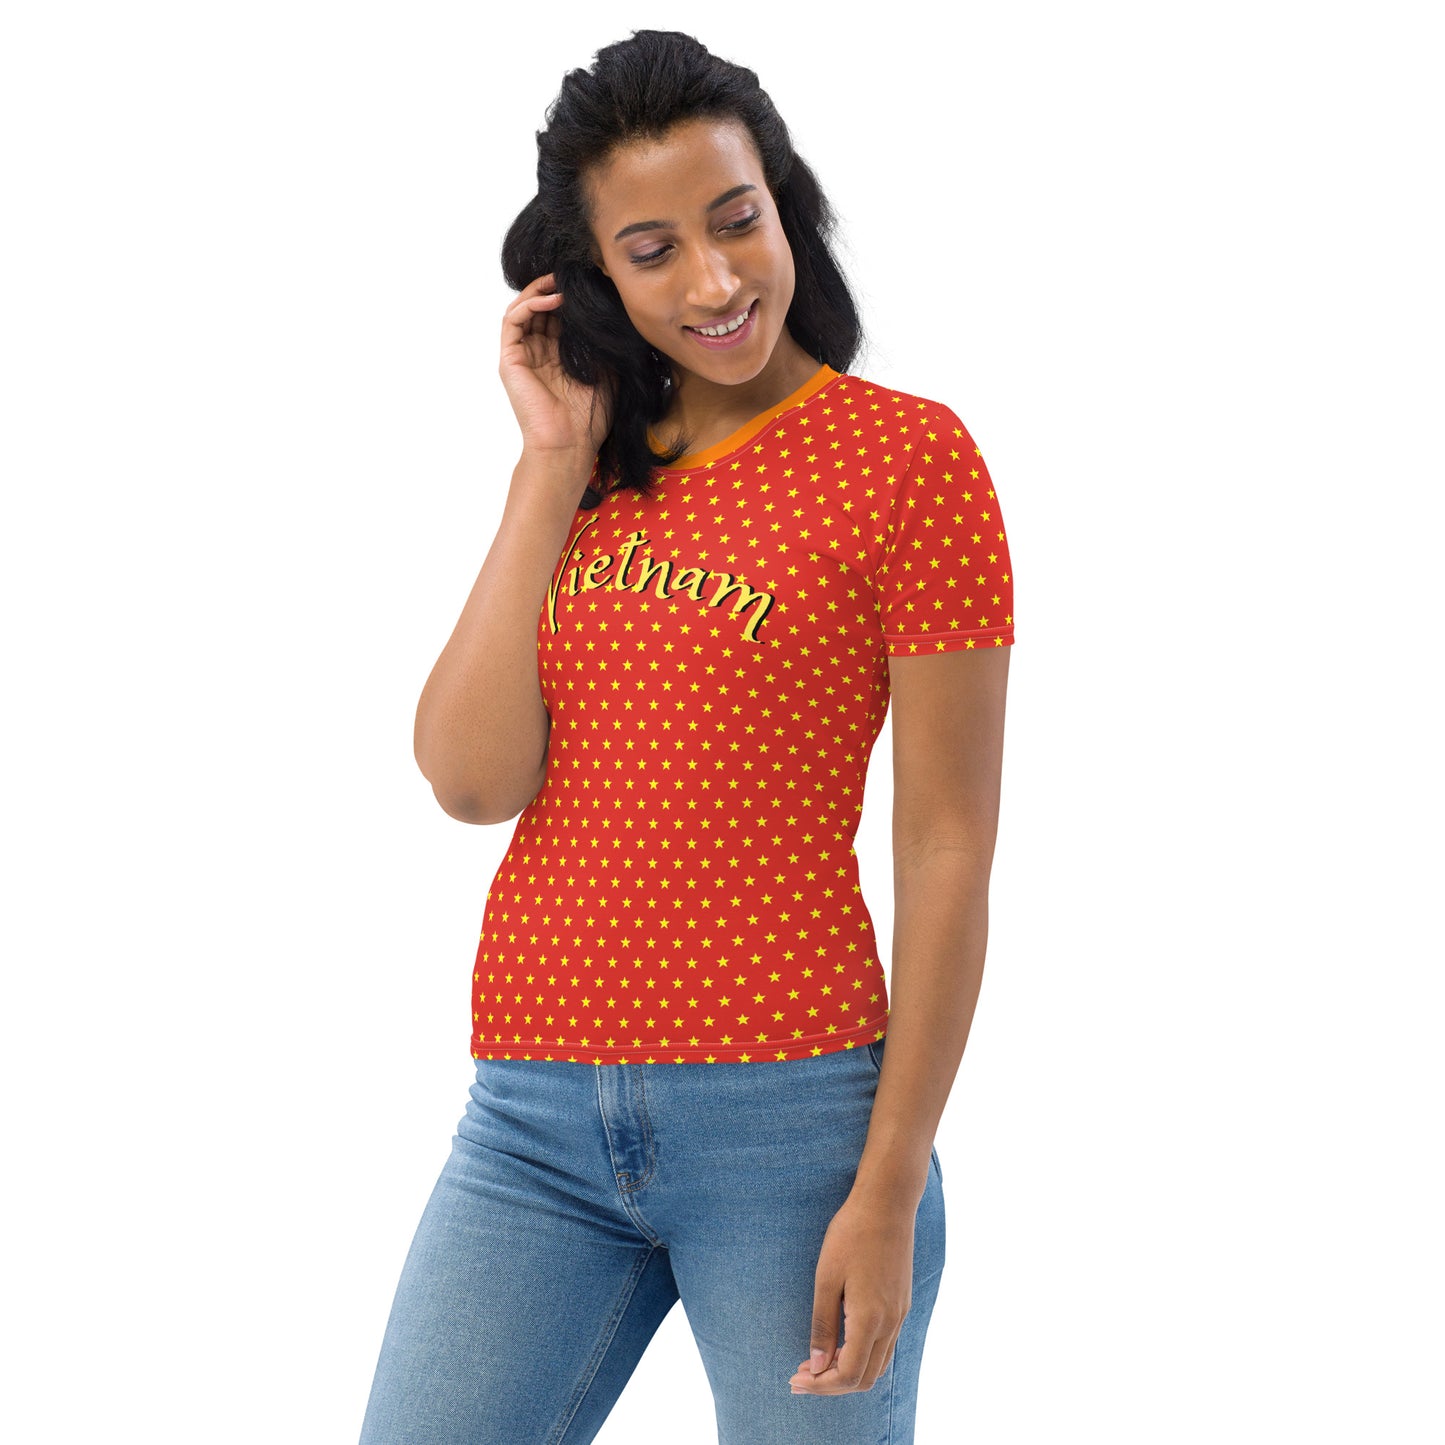 Women's Yellow Polka Dot T-Shirt with Vietnam Graphic